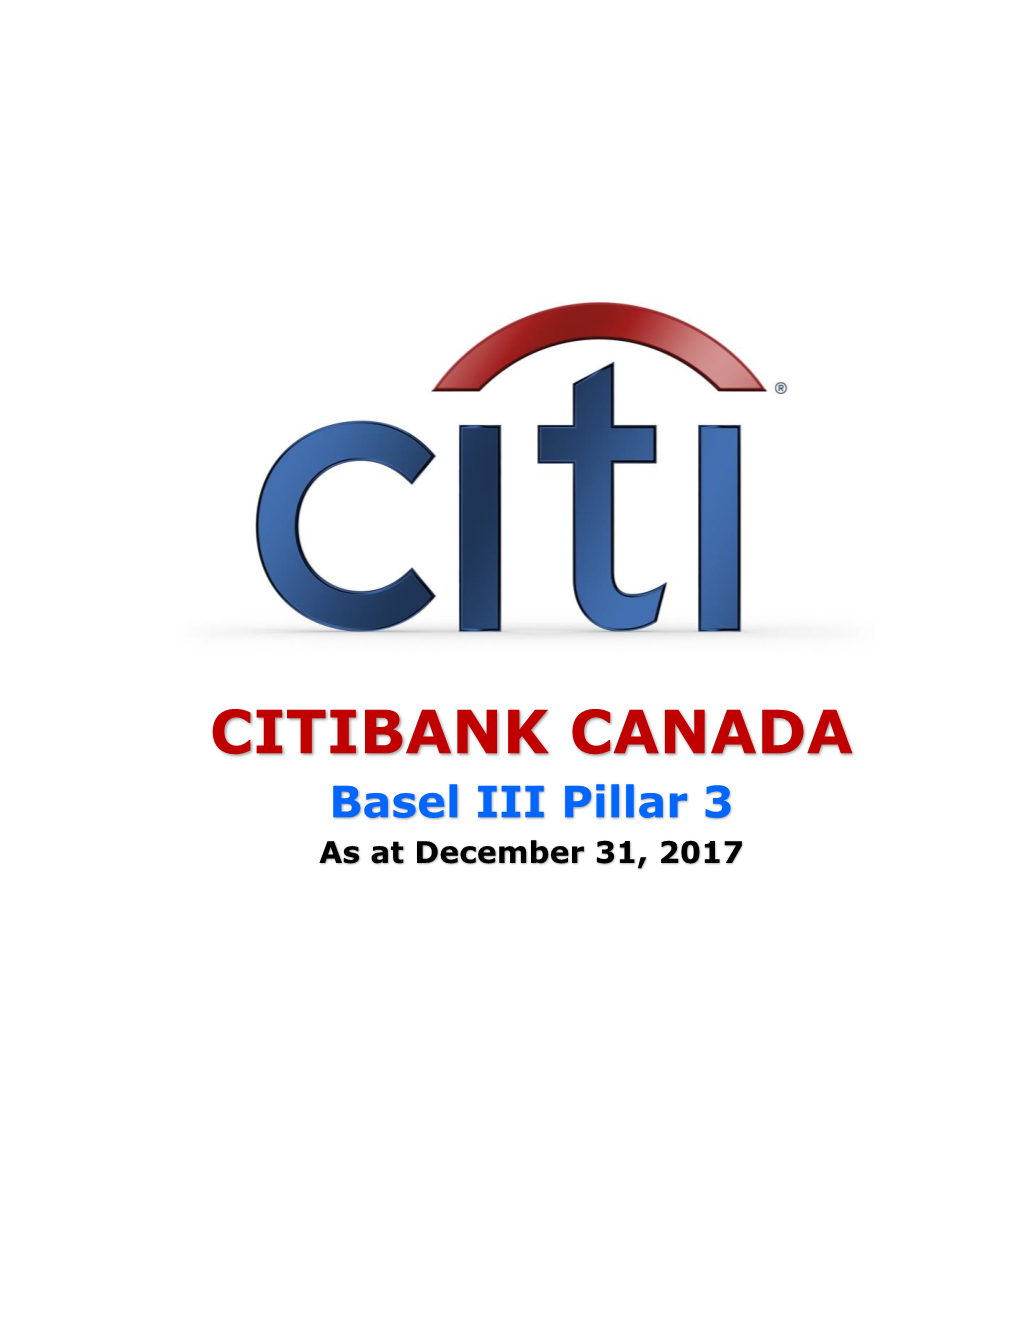 Citibank Canada